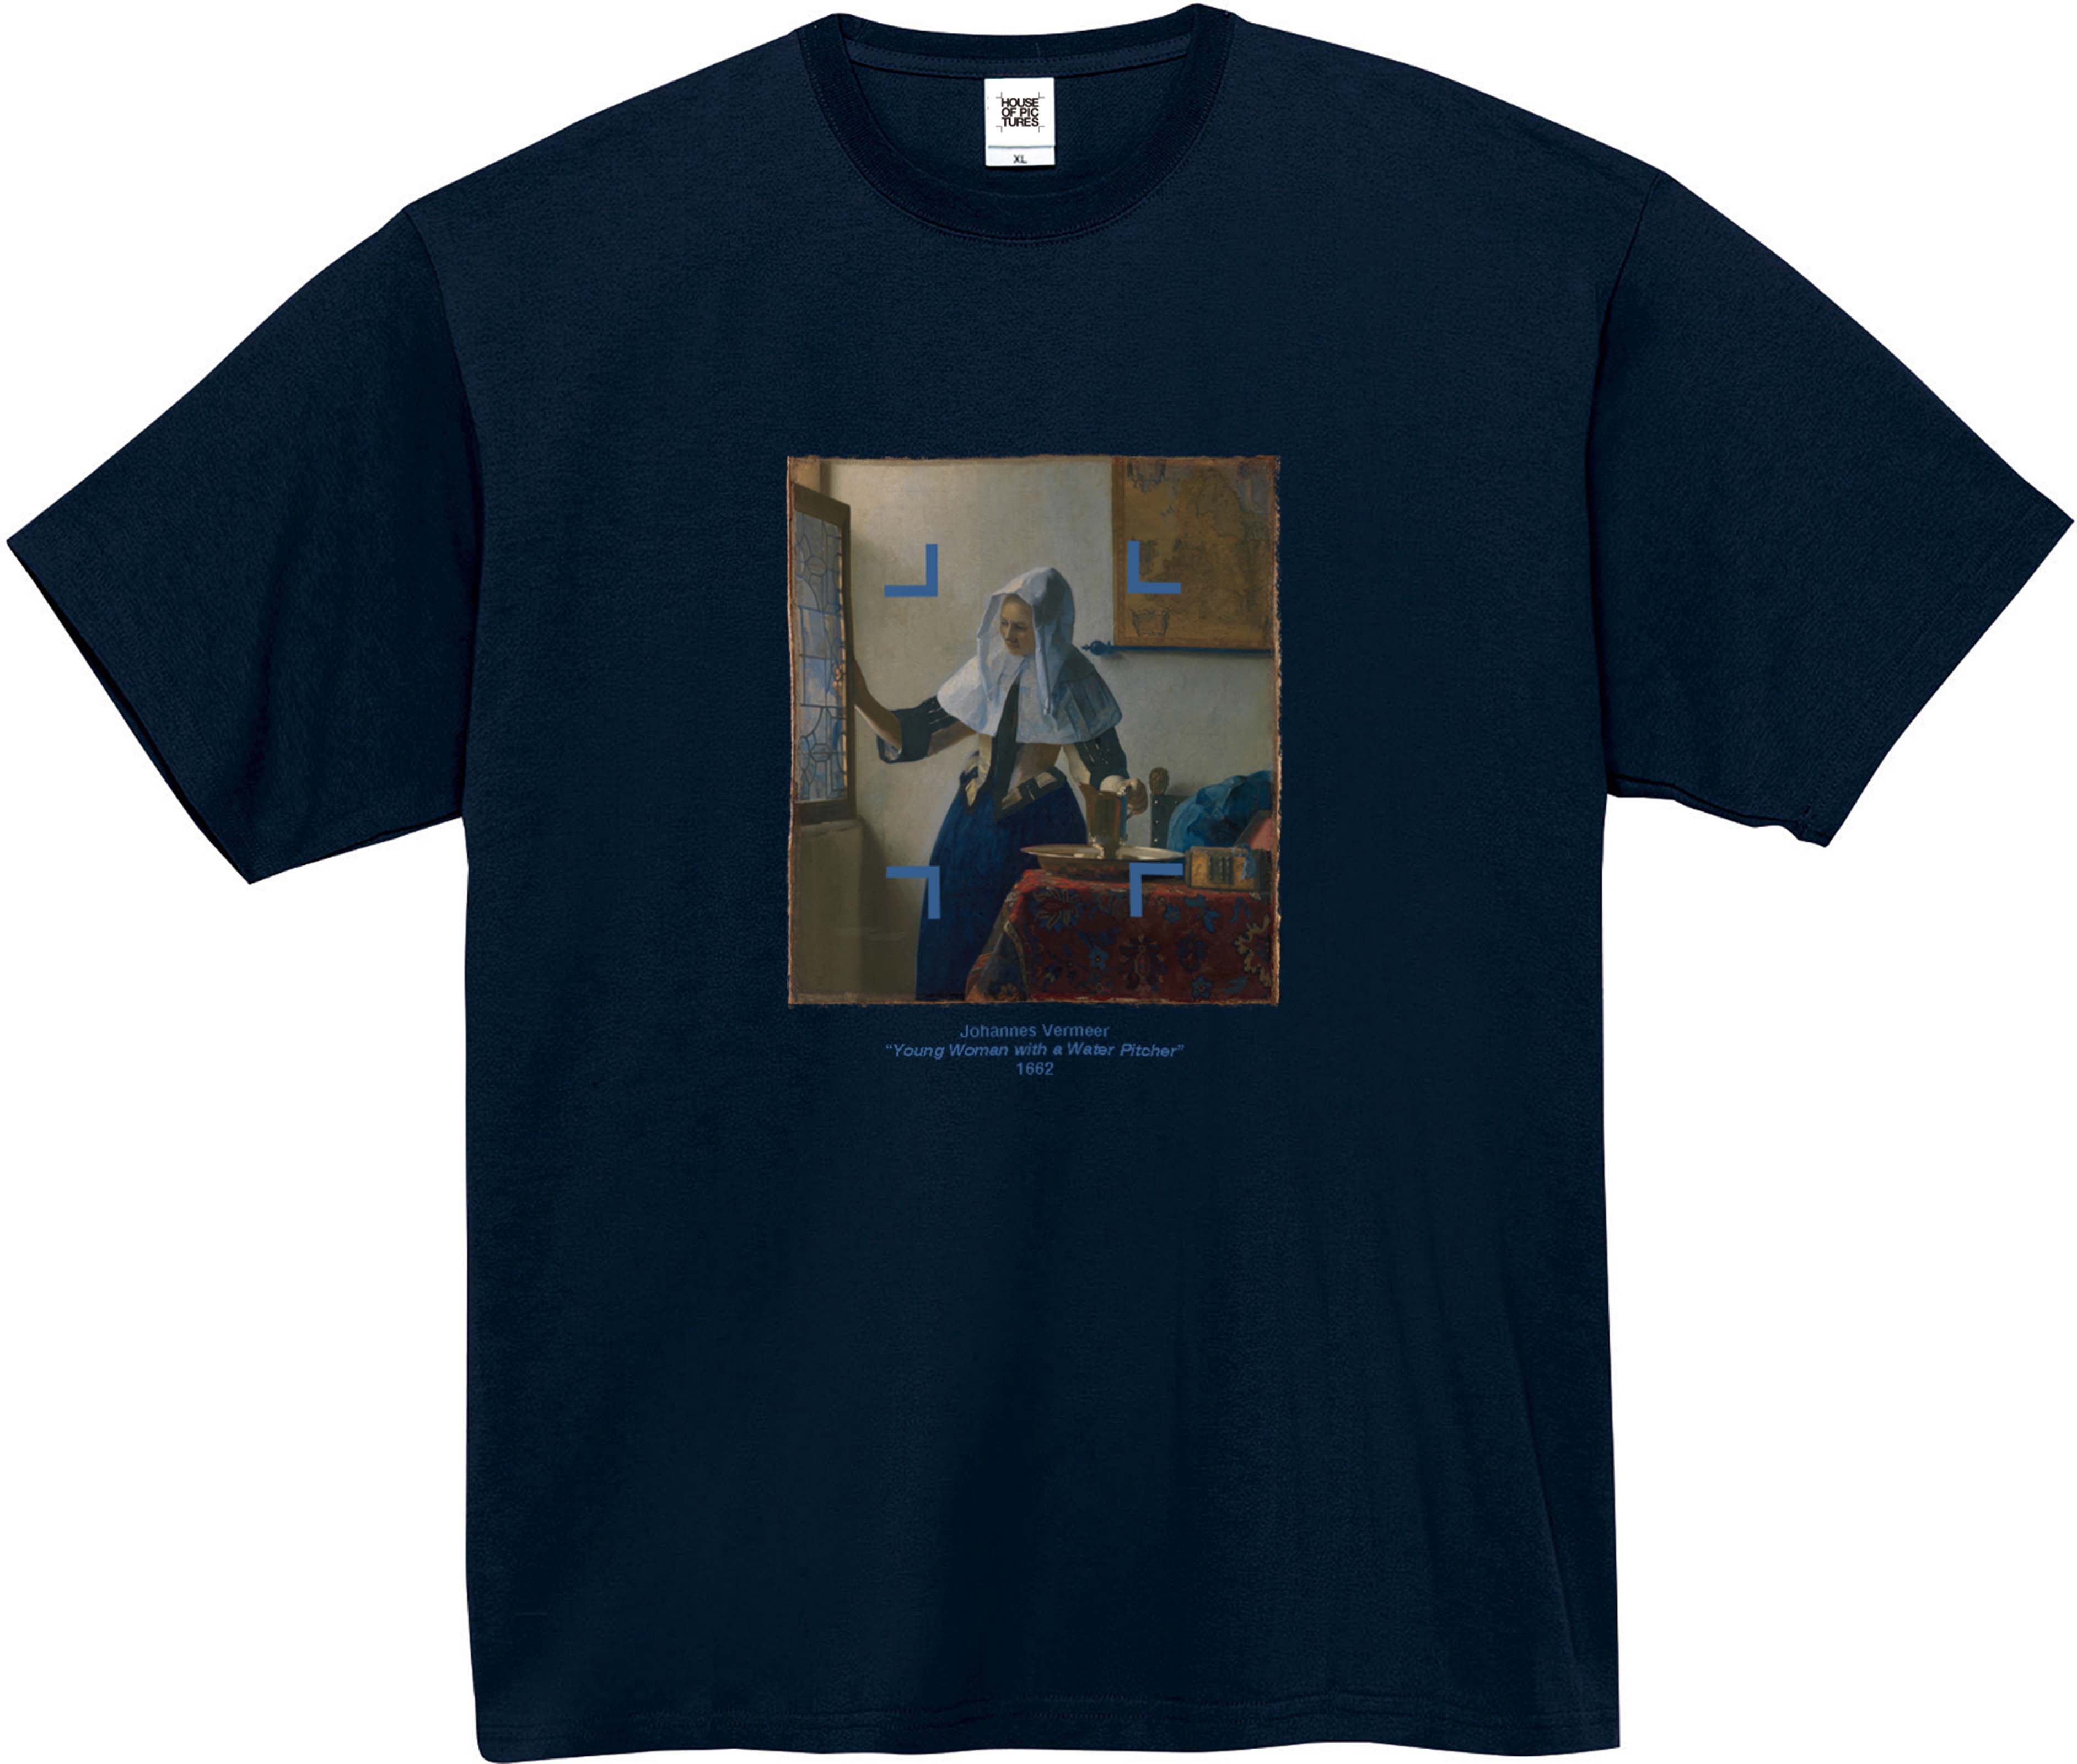 ヨハネス・フェルメール-水差しを持つ女 / 半袖クルーネックTシャツ